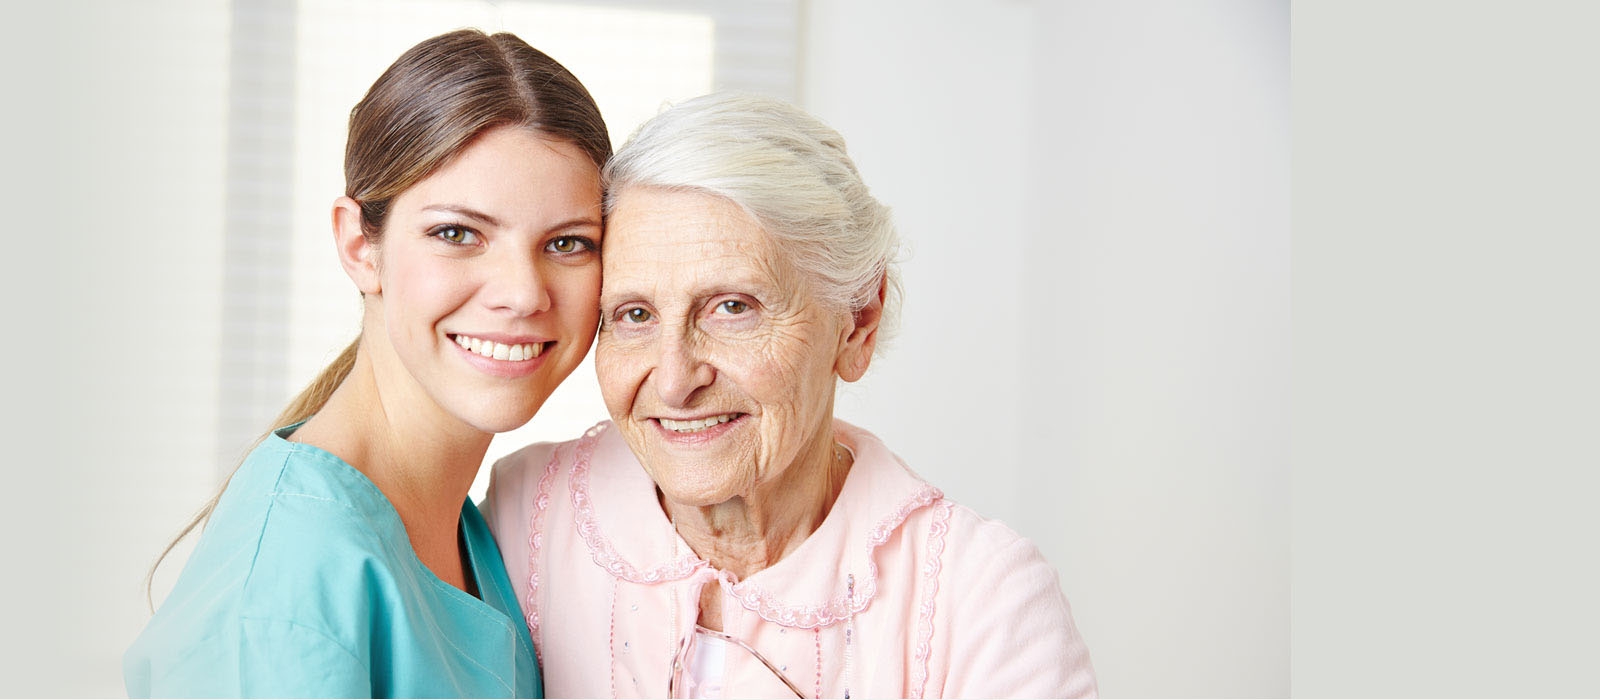 Artigo – Prevalência de fibrilação atrial, anticoagulação oral e fatores associados em idosos